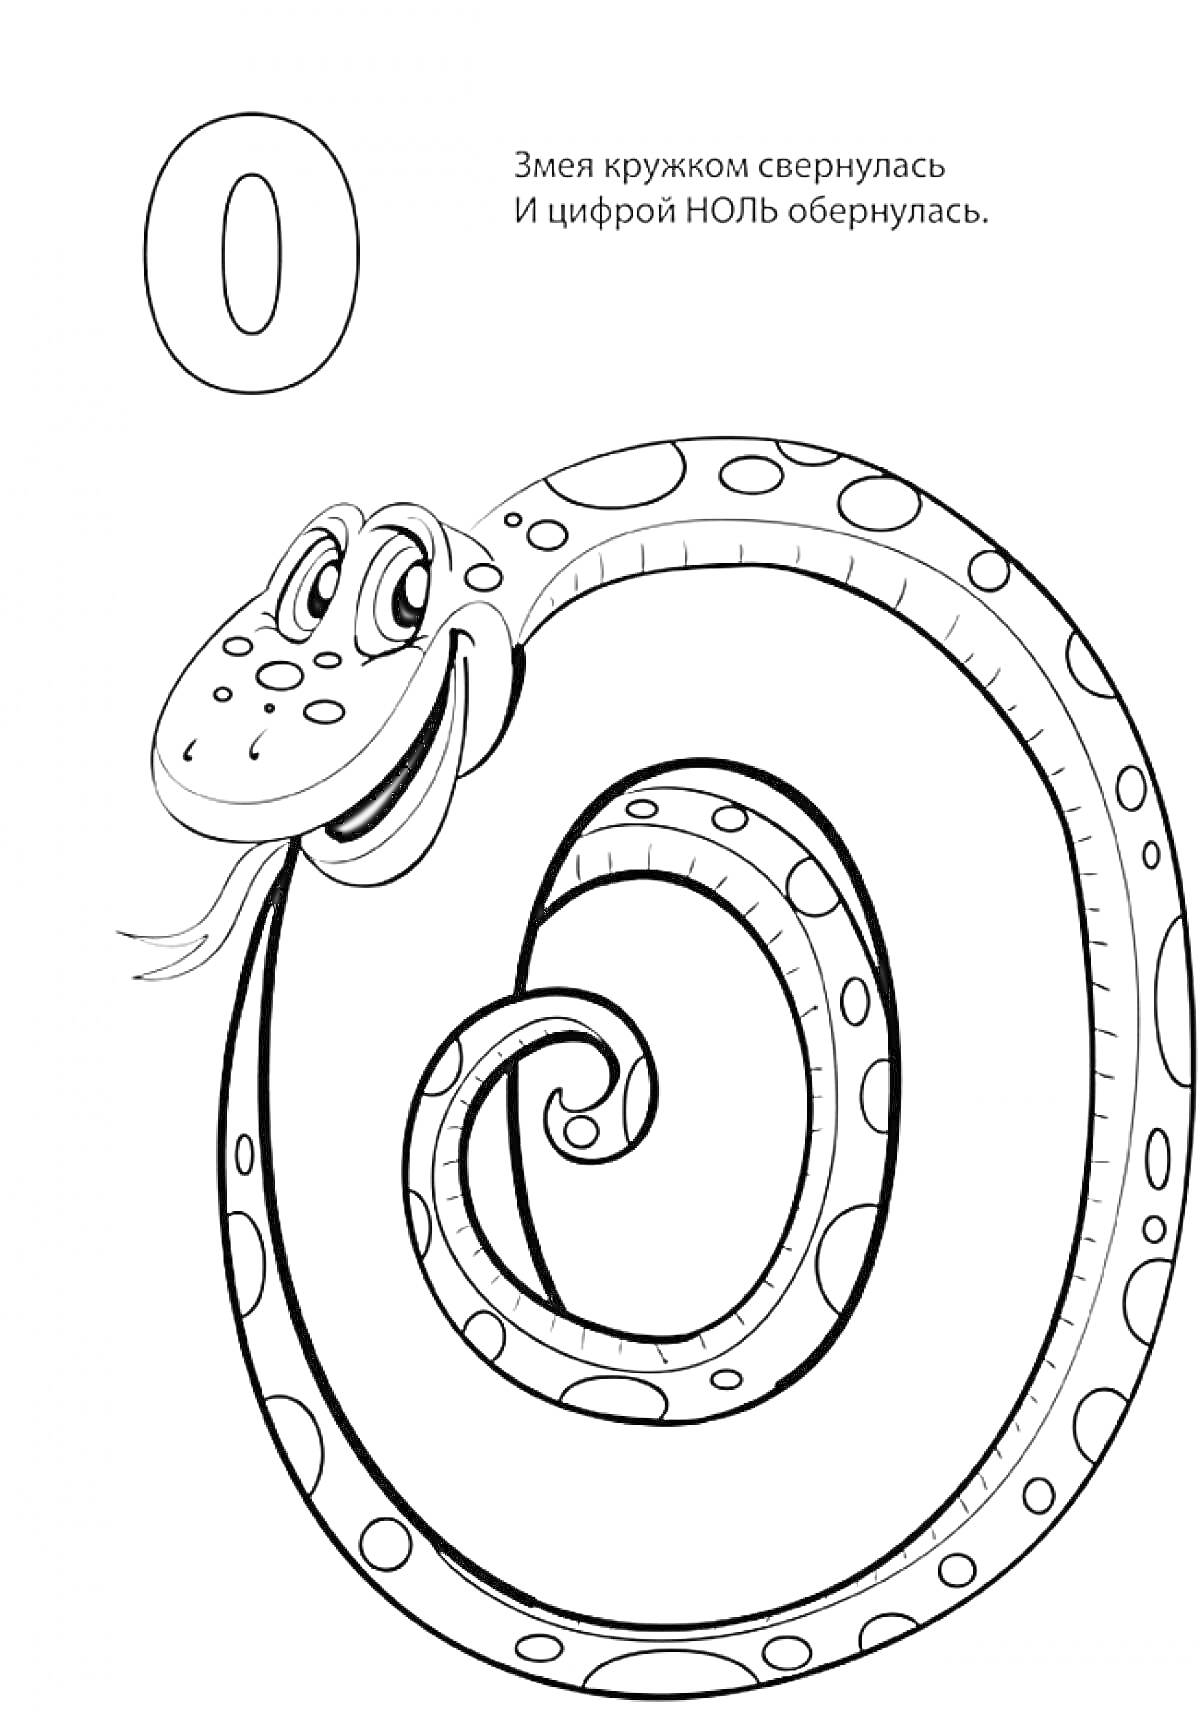 Цифра 0, Змея, свернутая в форме цифры 0, рисунок для раскрашивания